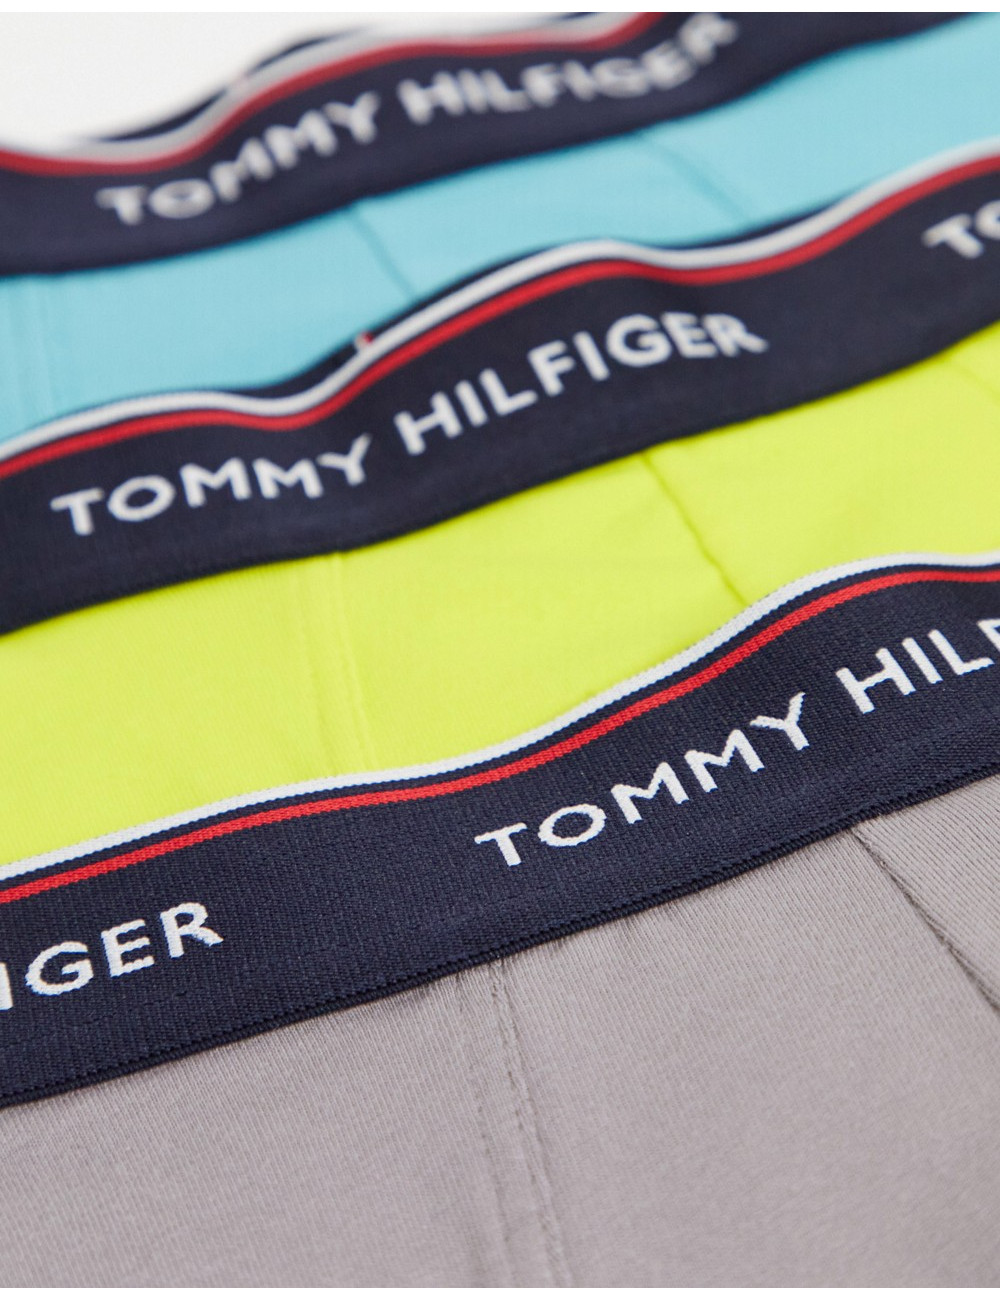 Tommy Hilfiger 3 pack...